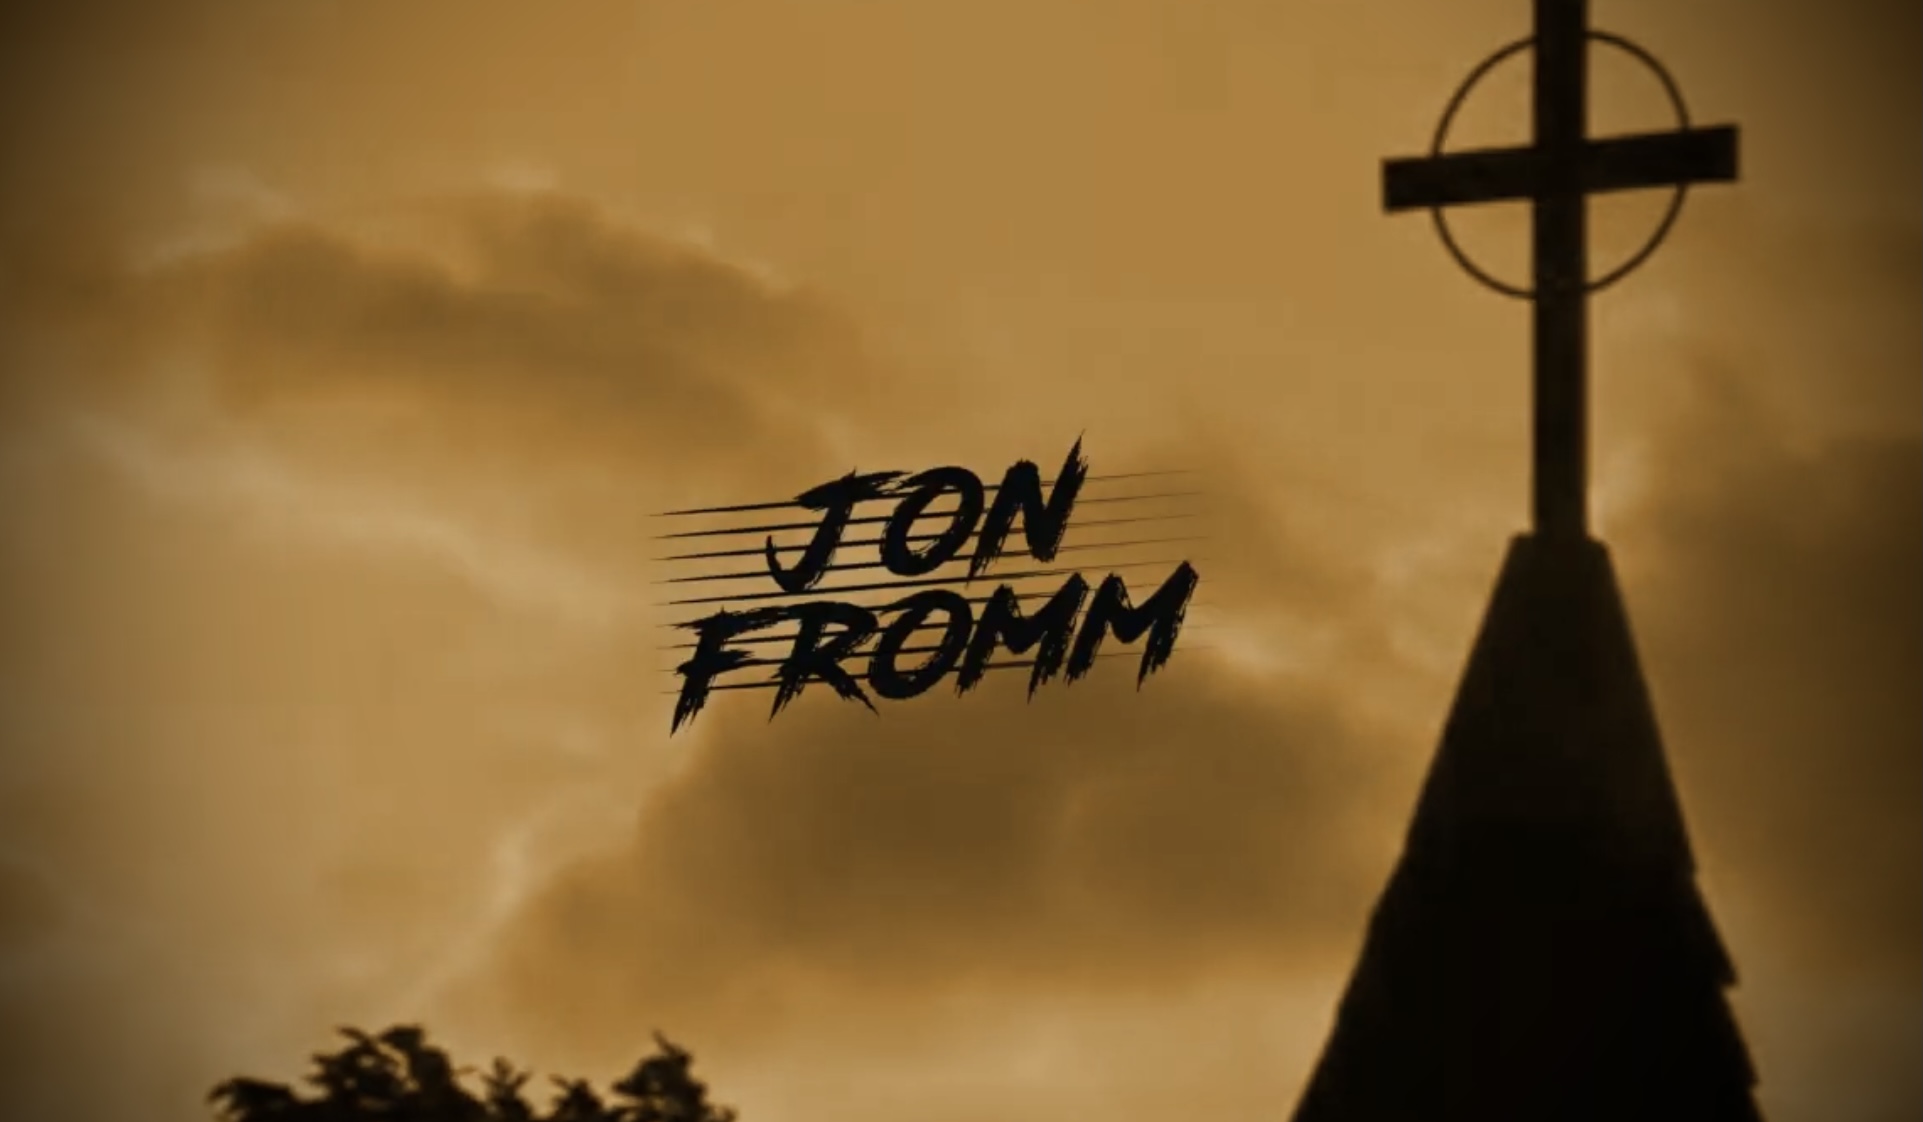 Jon Fromm 50/50 “Prime Frame” Promo